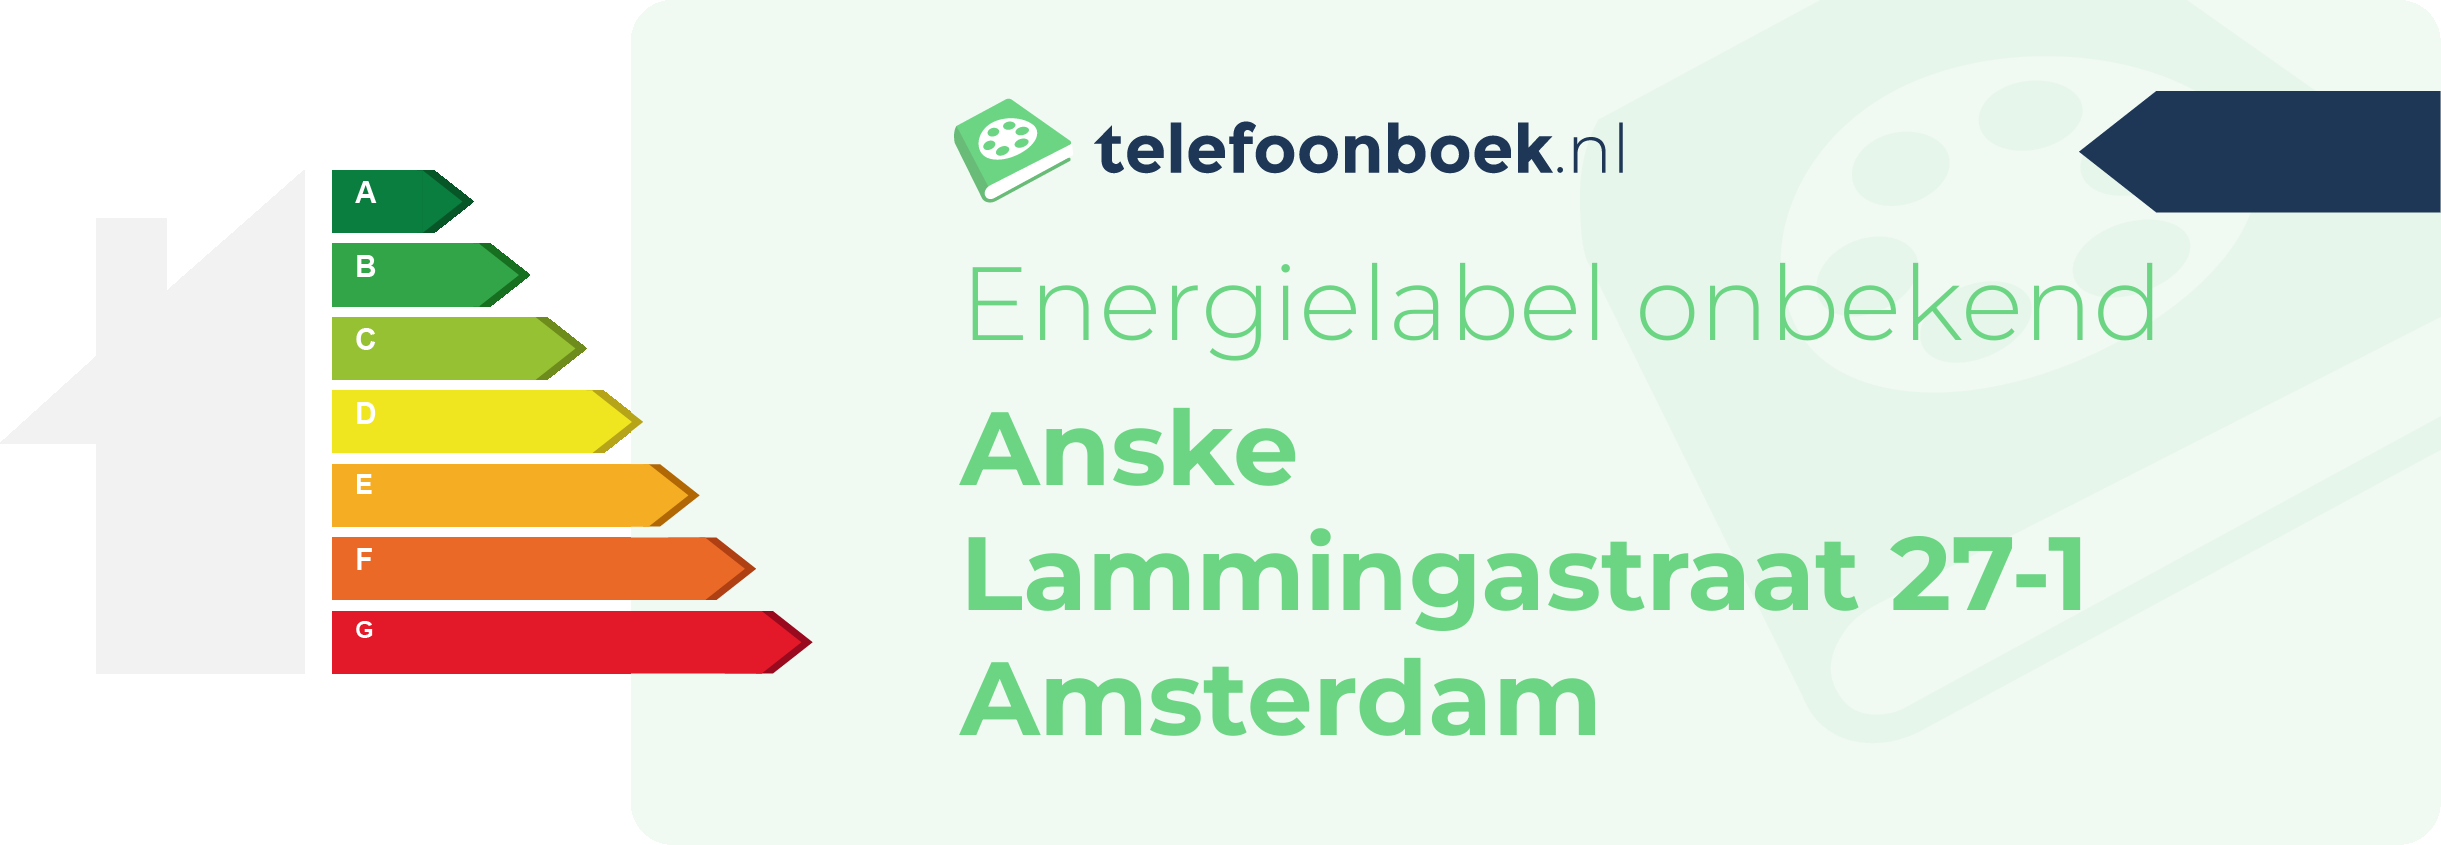 Energielabel Anske Lammingastraat 27-1 Amsterdam